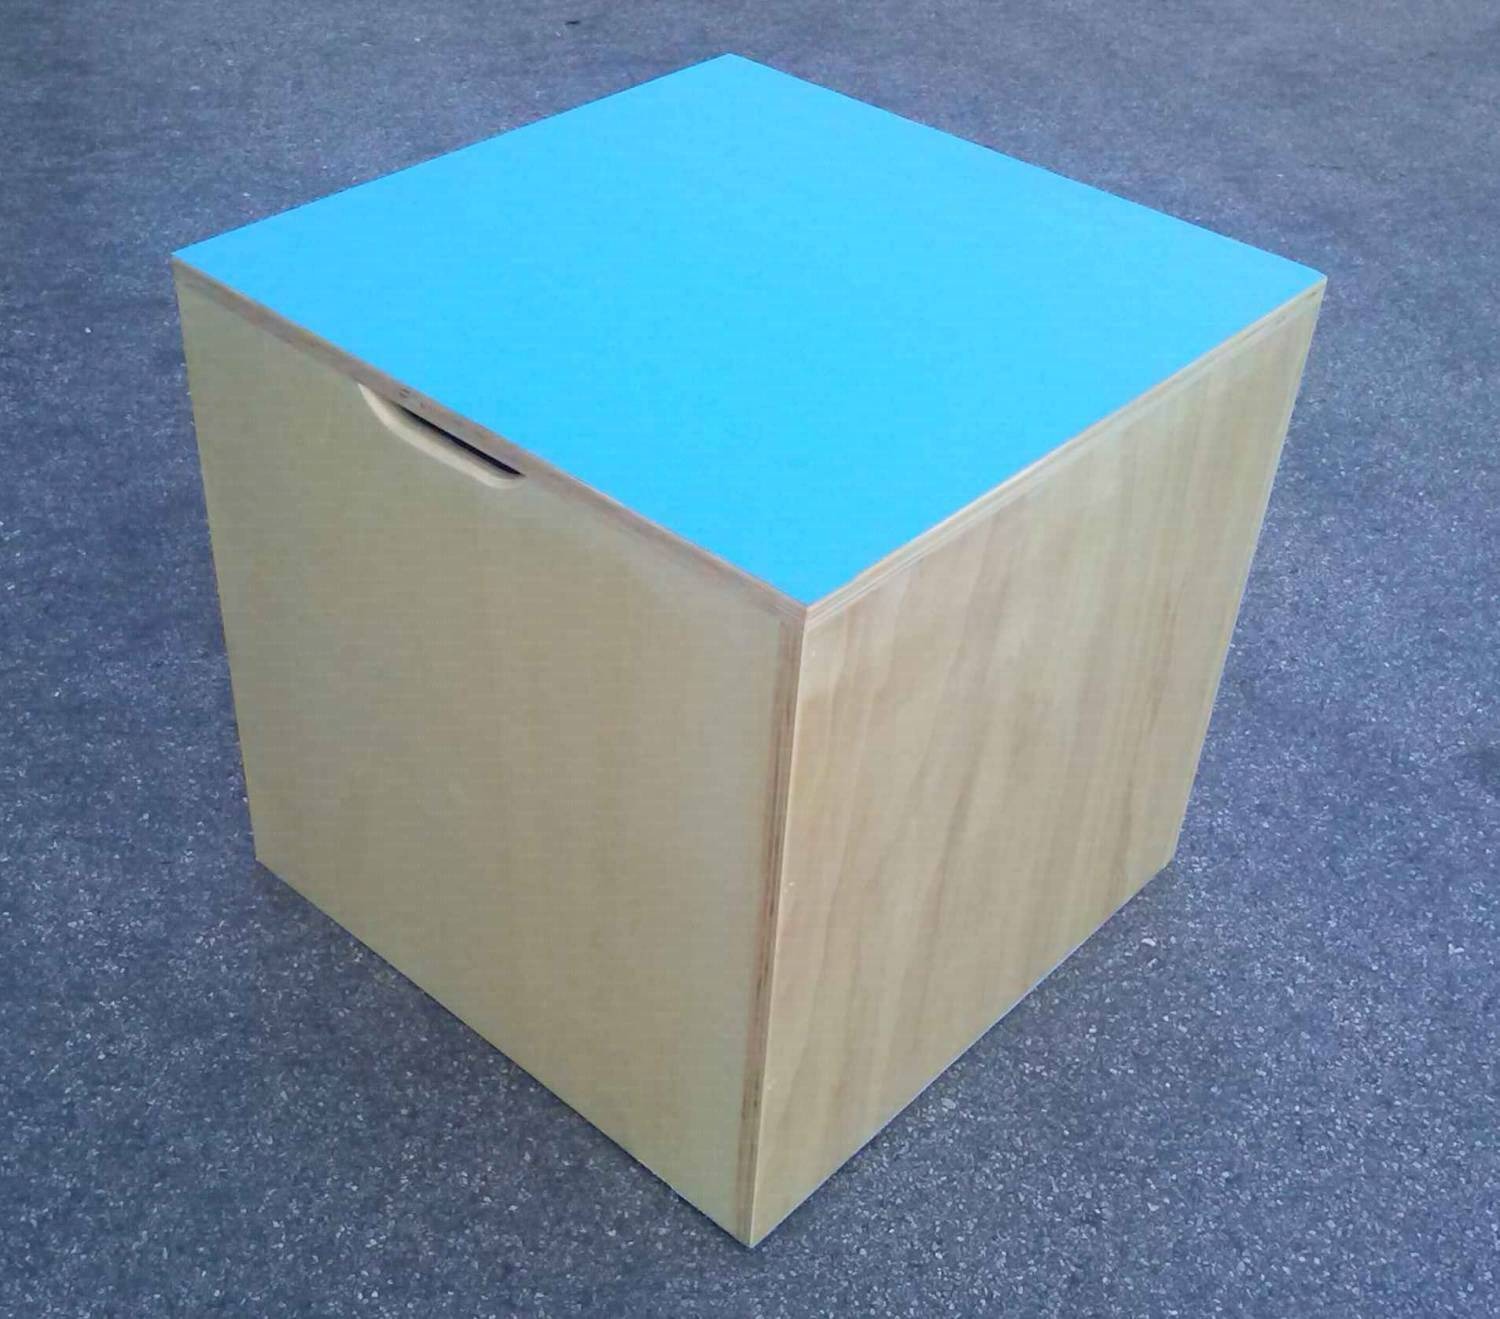 Cubo propriocettivo misura 80x80x80 cm., in legno con fondo e piano superiore dotato di antiscivolo, con impugnature per il trasporto.